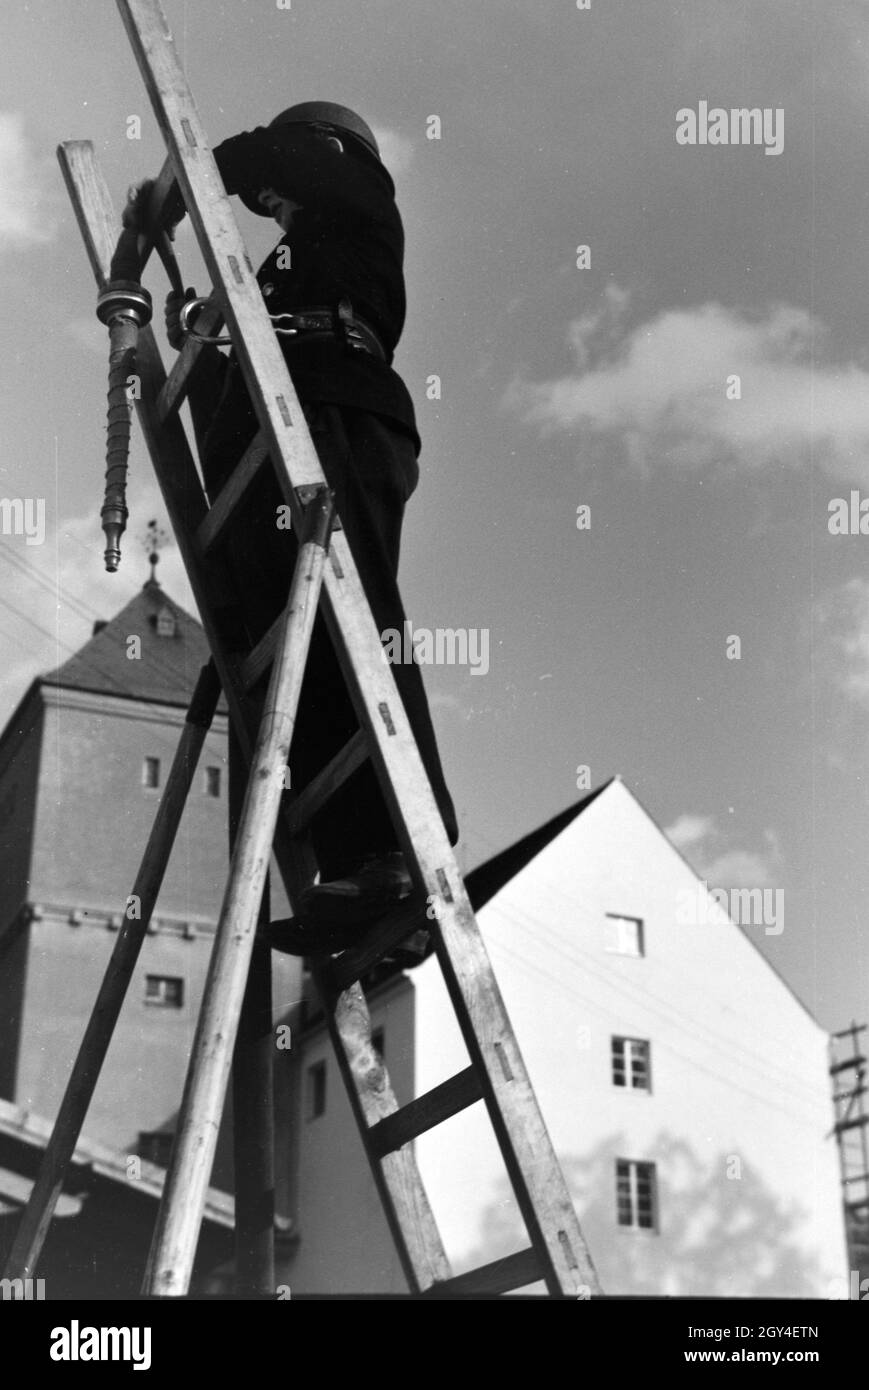 Ein Junge von der Kinderfeuerwehr bei einer Feuerwehrübung mit dem Löschschlauch auf einer Leiter, Deutschland 1930er Jahre. A boy of the junior firefighters standing on a ladder with the water hose during a firefighter training, Germany 1930s. Stock Photo